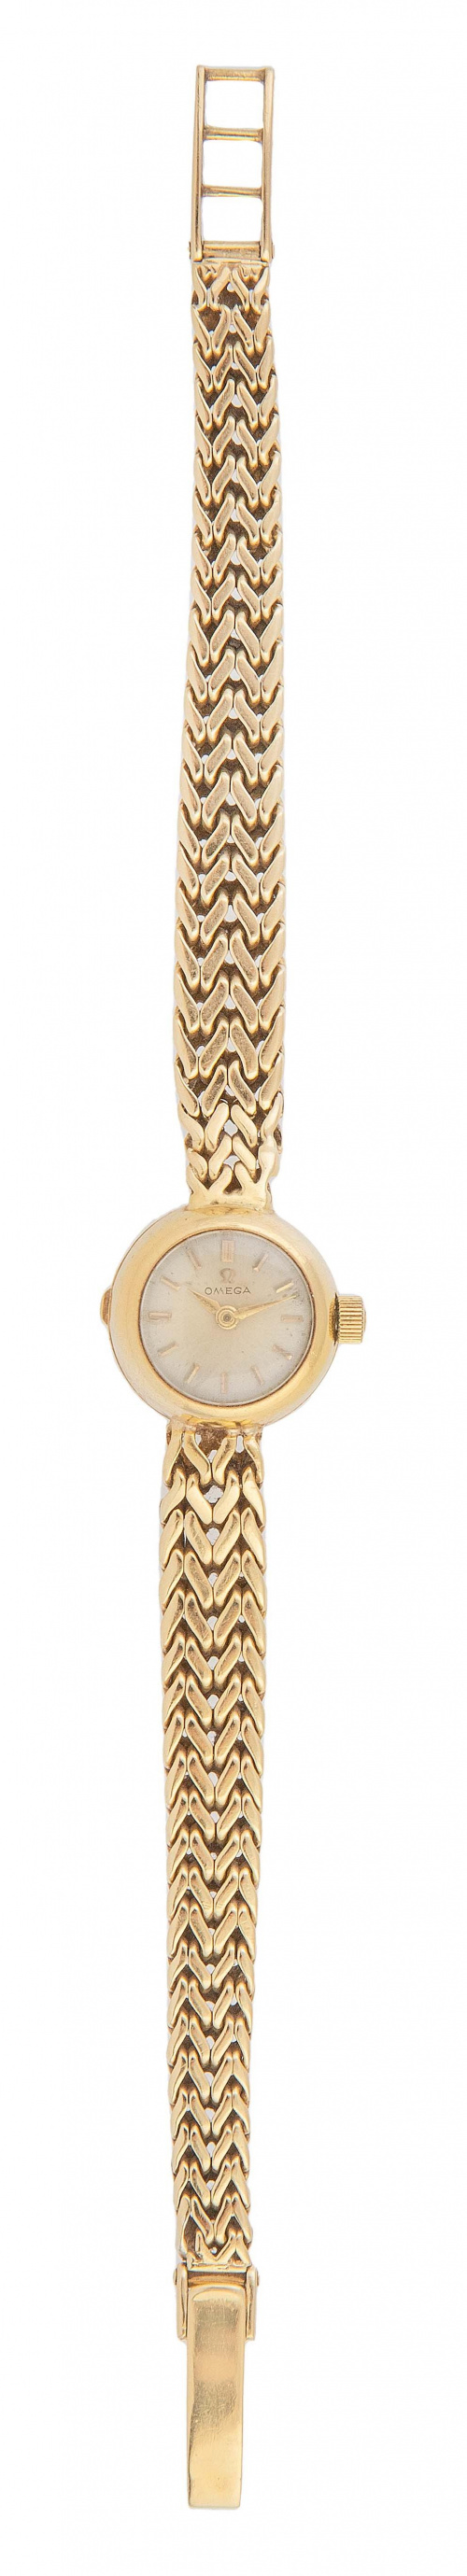 Reloj OMEGA de pulsera para señora años 60 con pulsera de d